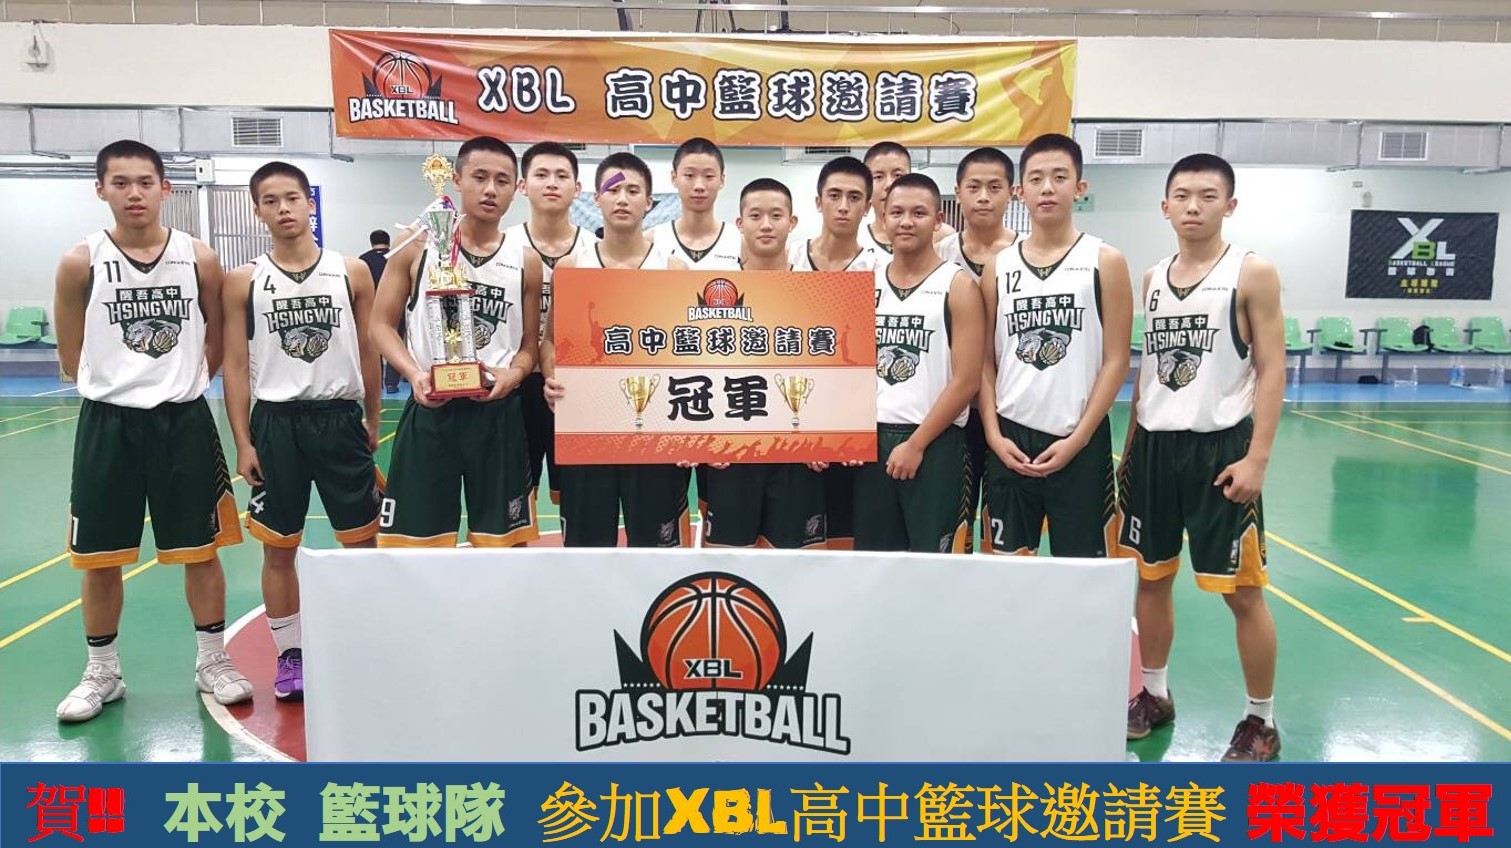 賀!! 本校籃球隊參加XBL高中籃球邀請賽榮獲冠軍